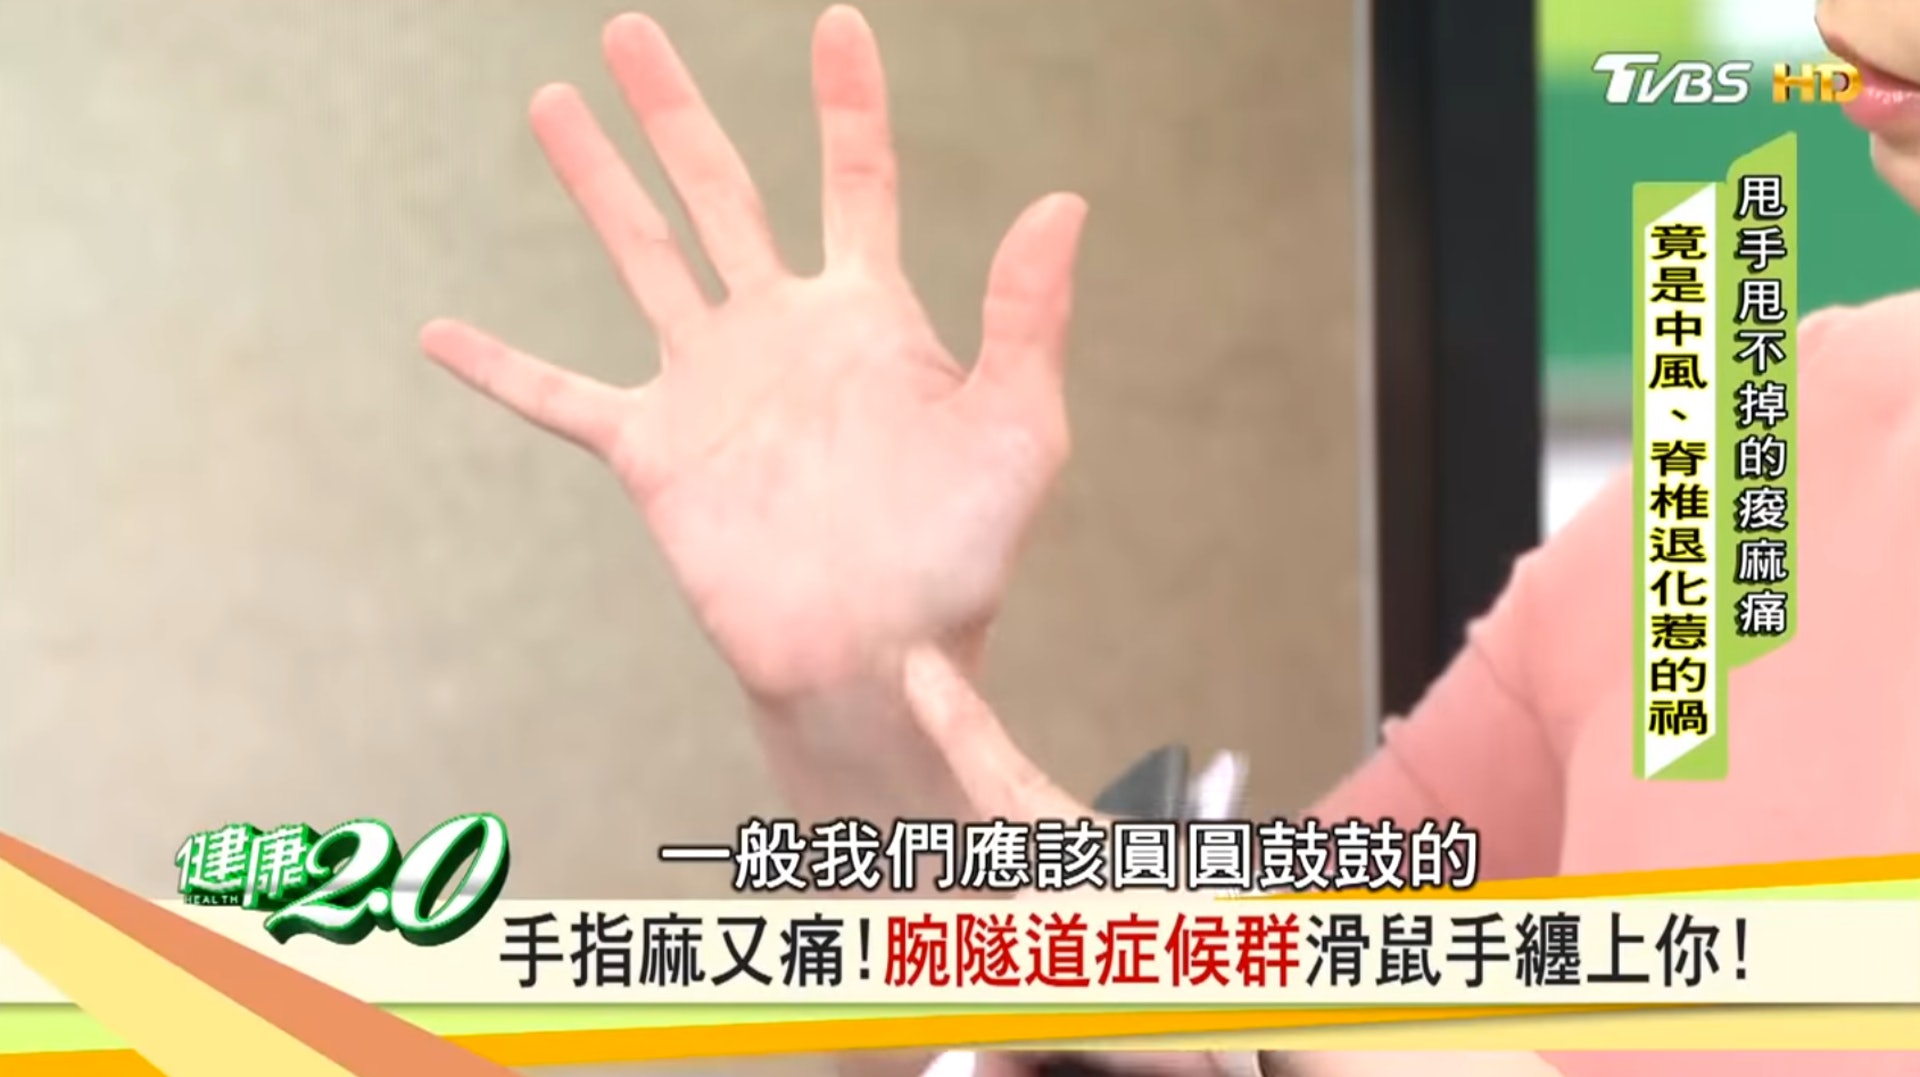 拇指球位置（台灣TVBS頻道節目《健康2.0》截圖）